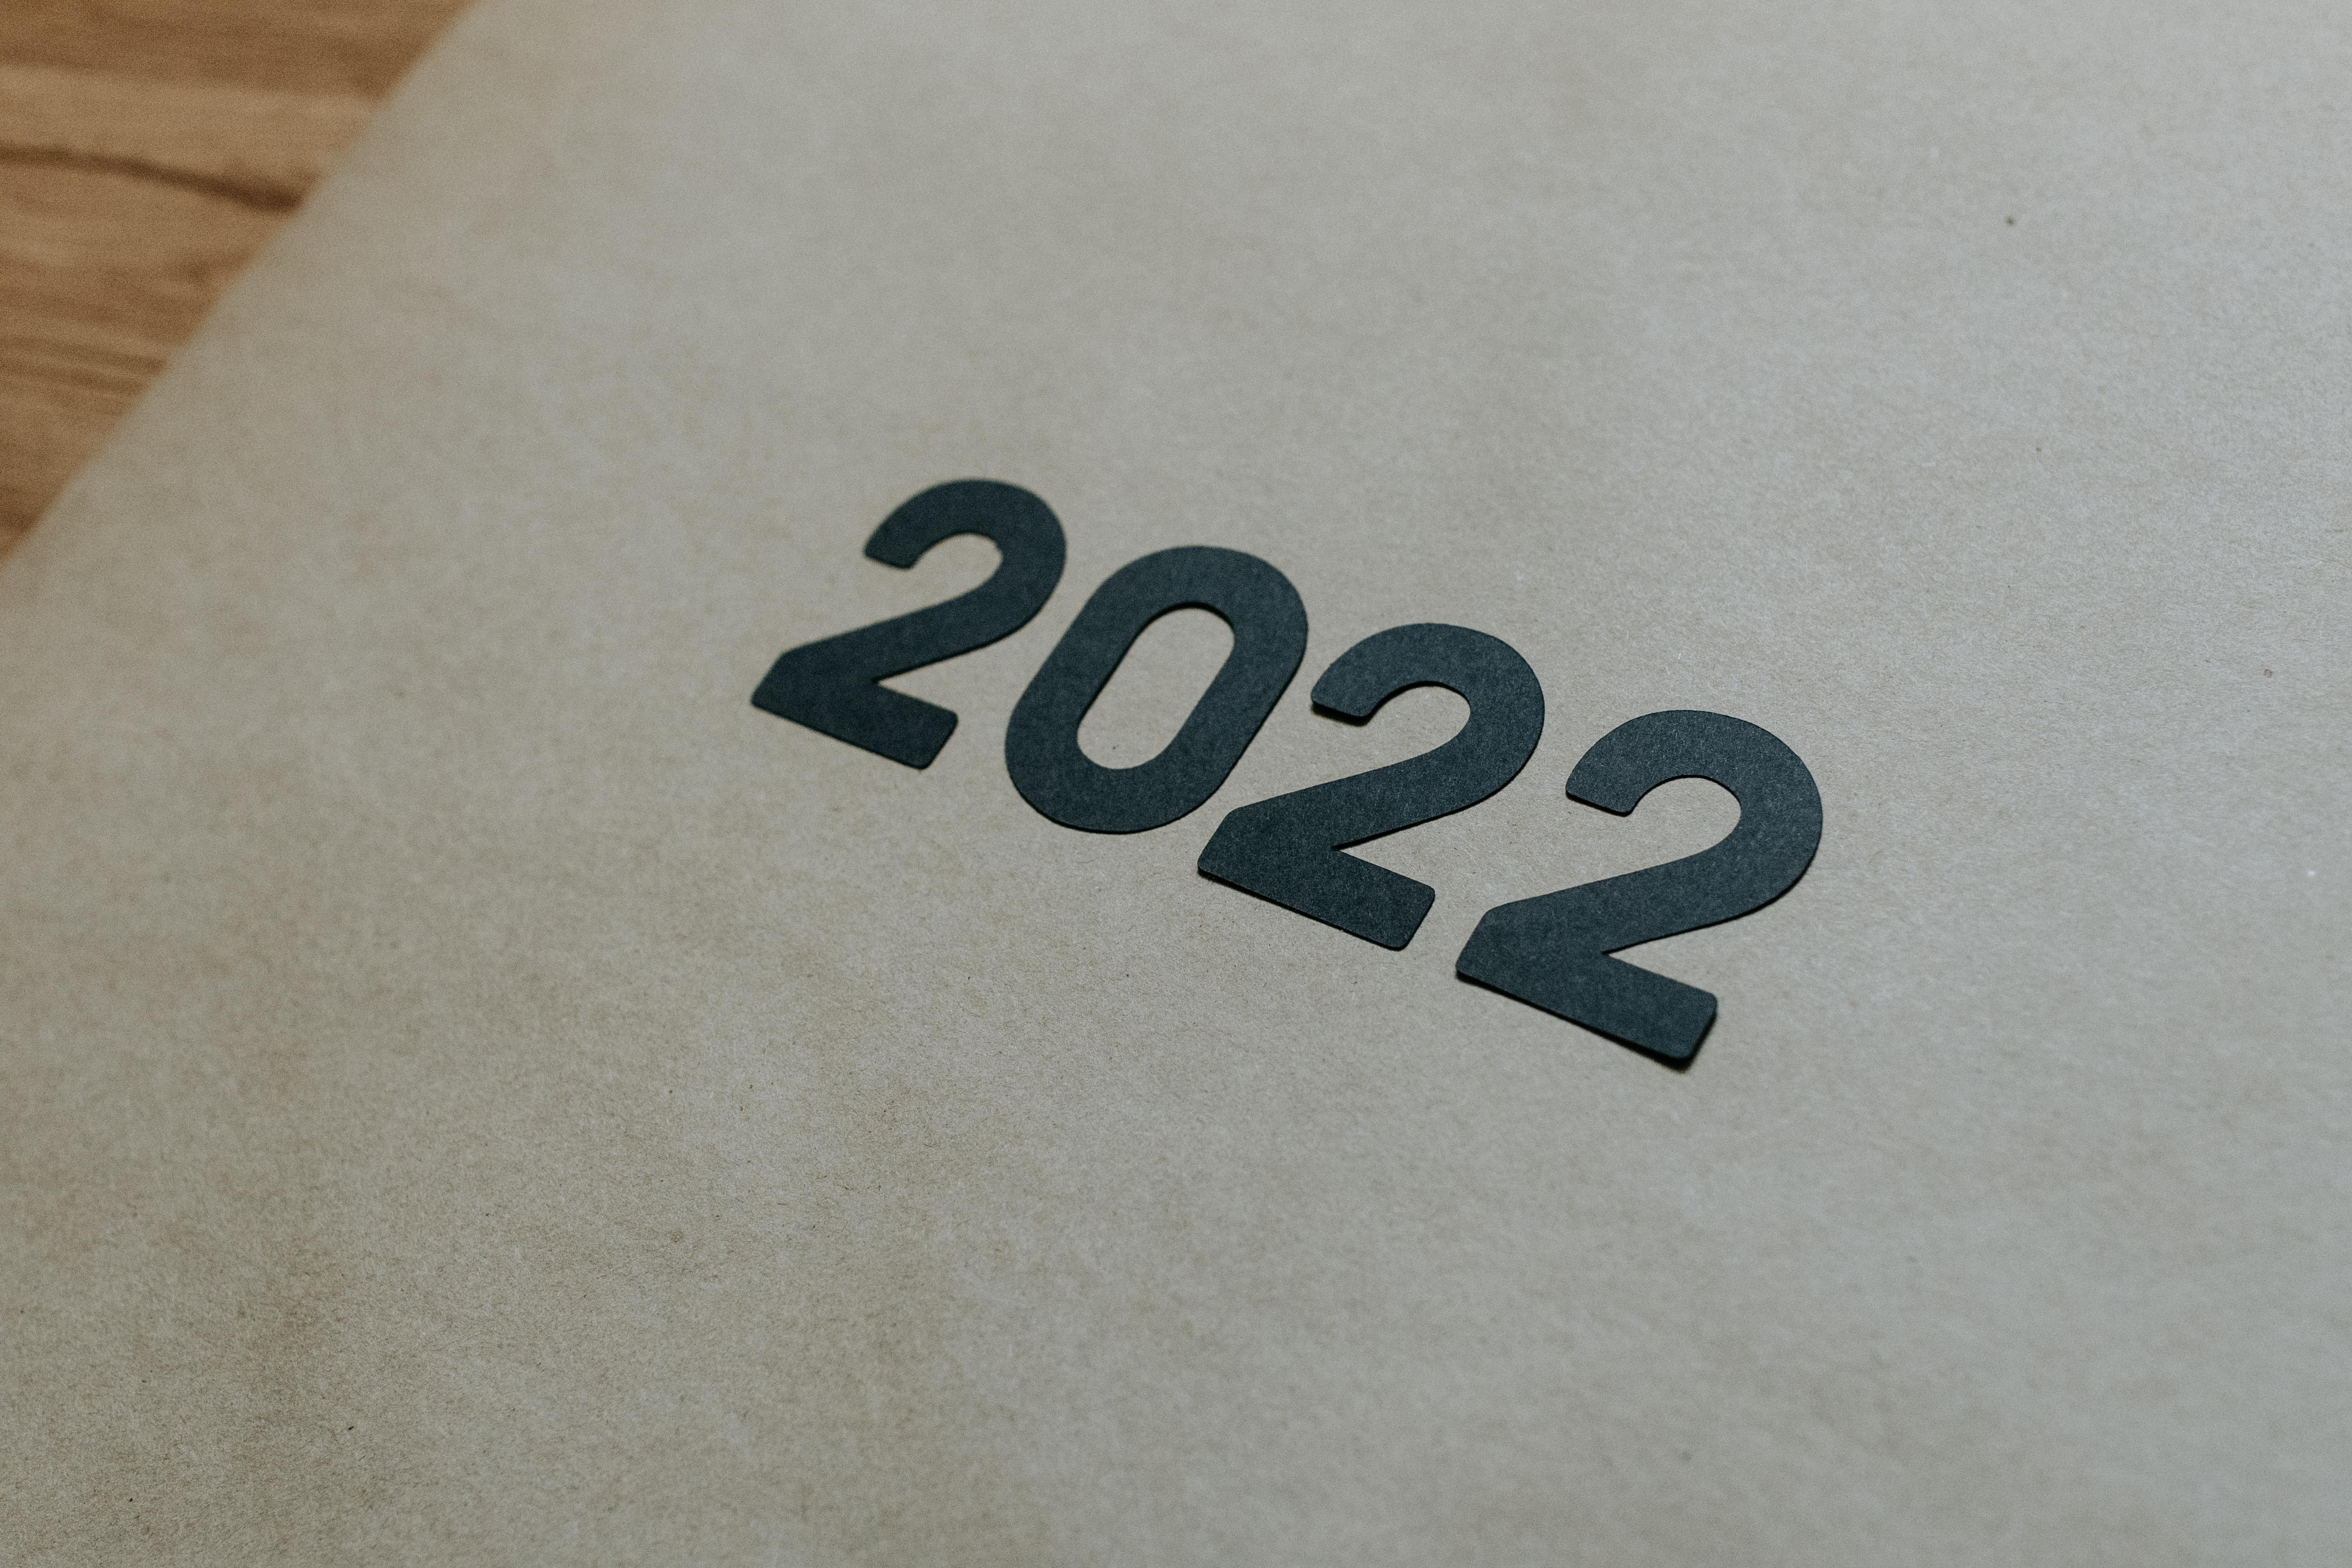 2022. Foto de Kelly Sikkema en Unsplash